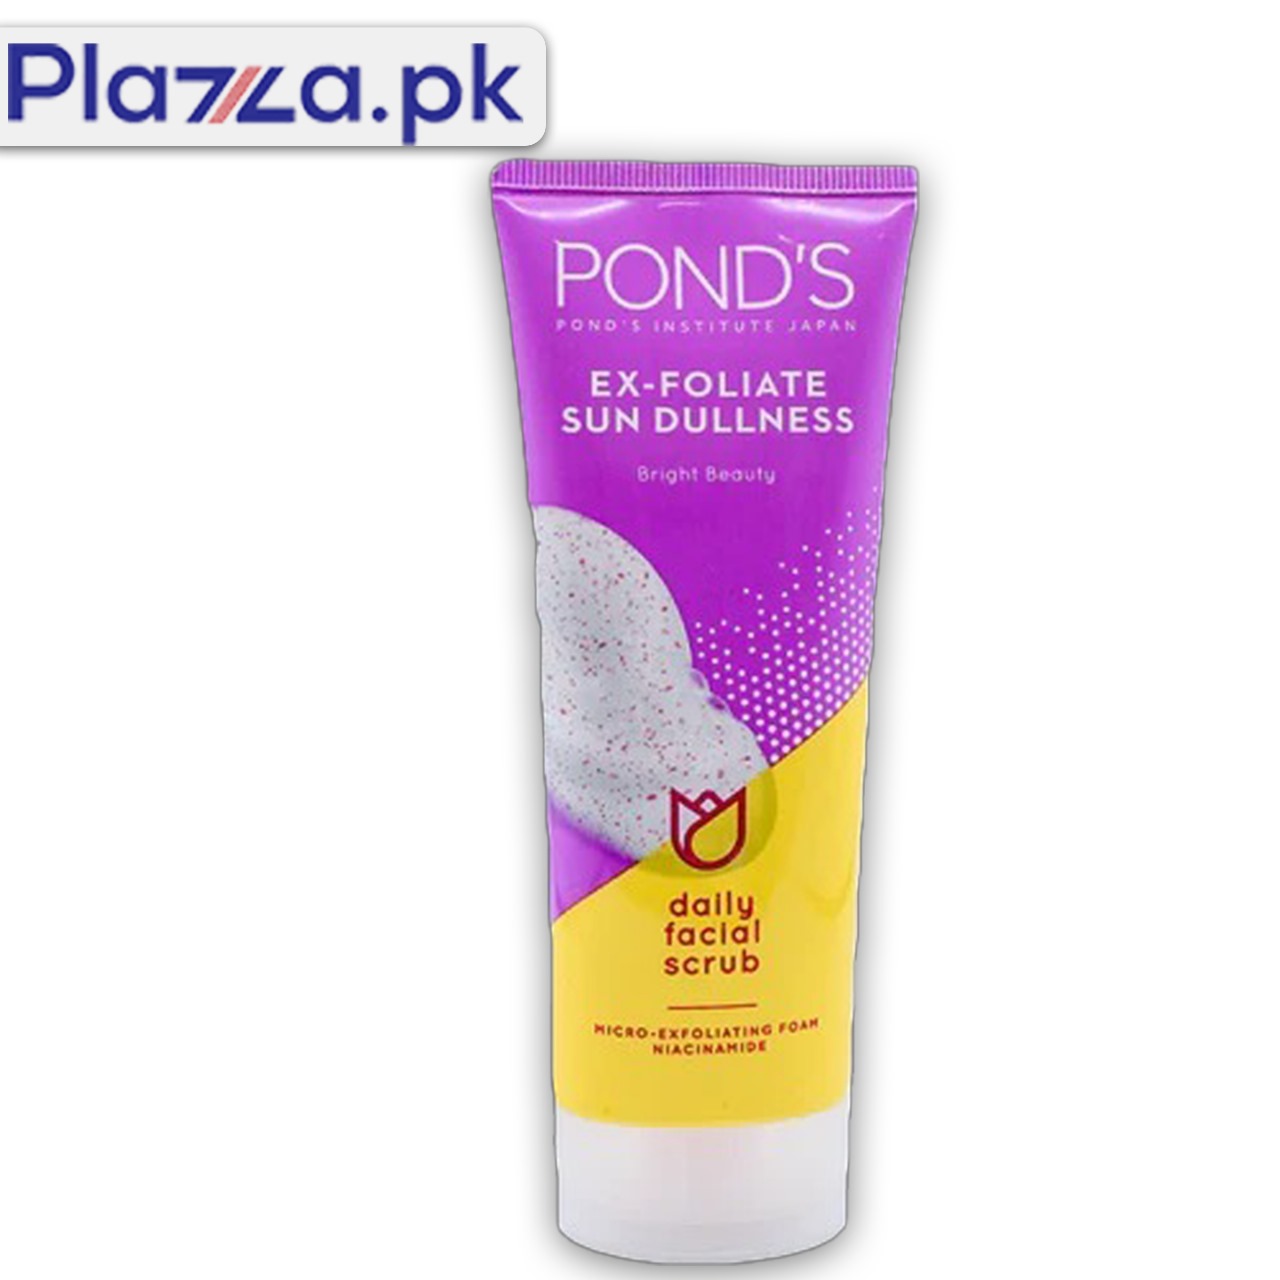 Ponds Ex Foliate Sun Dullness Daily Facial Scrub in Karachi